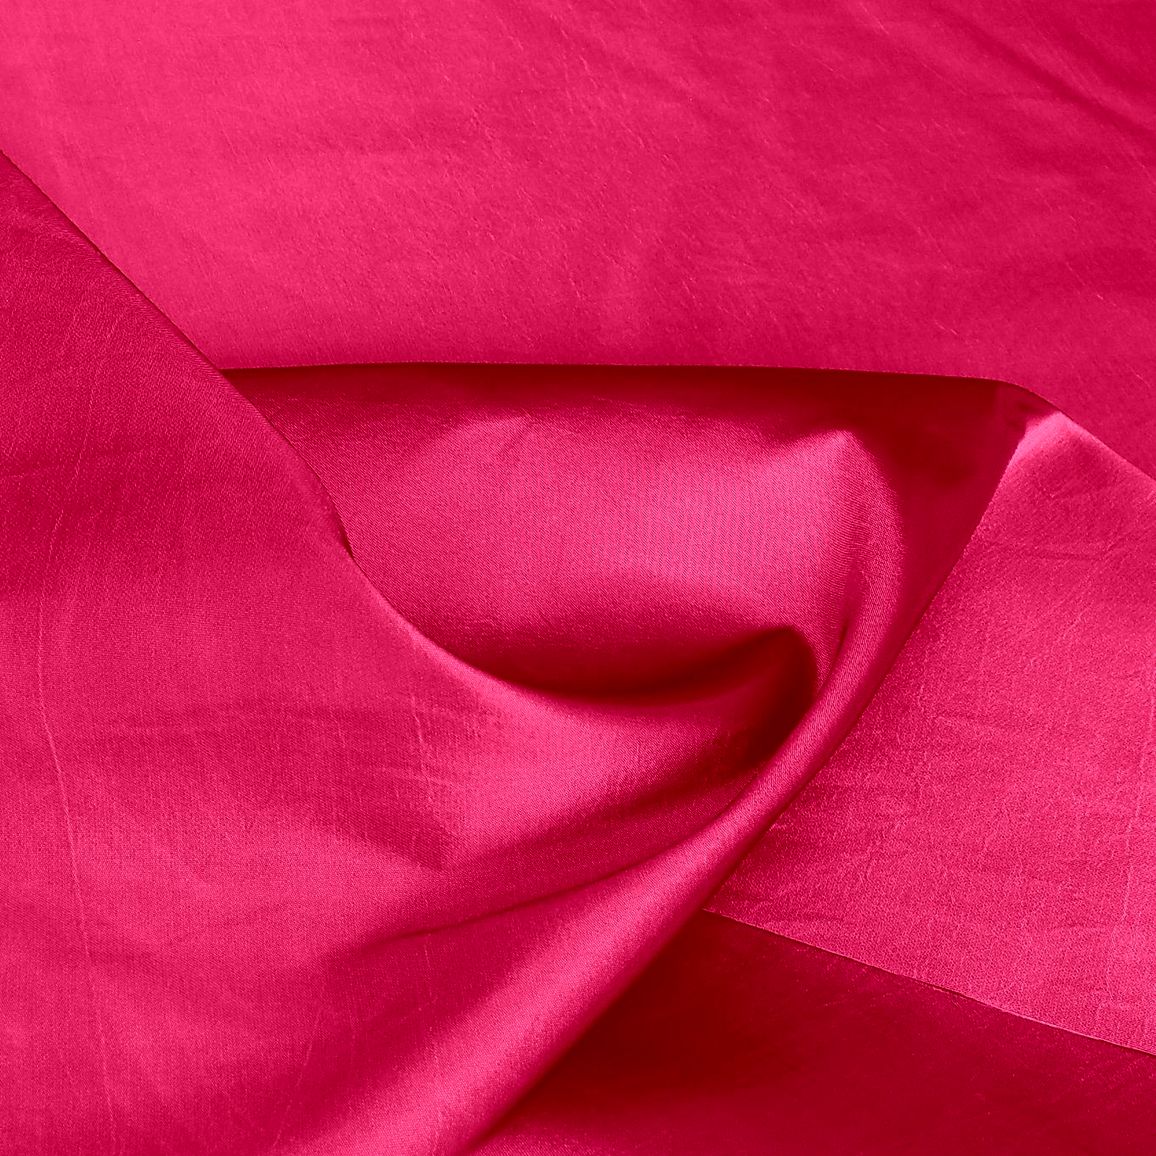 (Muster) Kleider- und DekoTaft in Pink-Rot